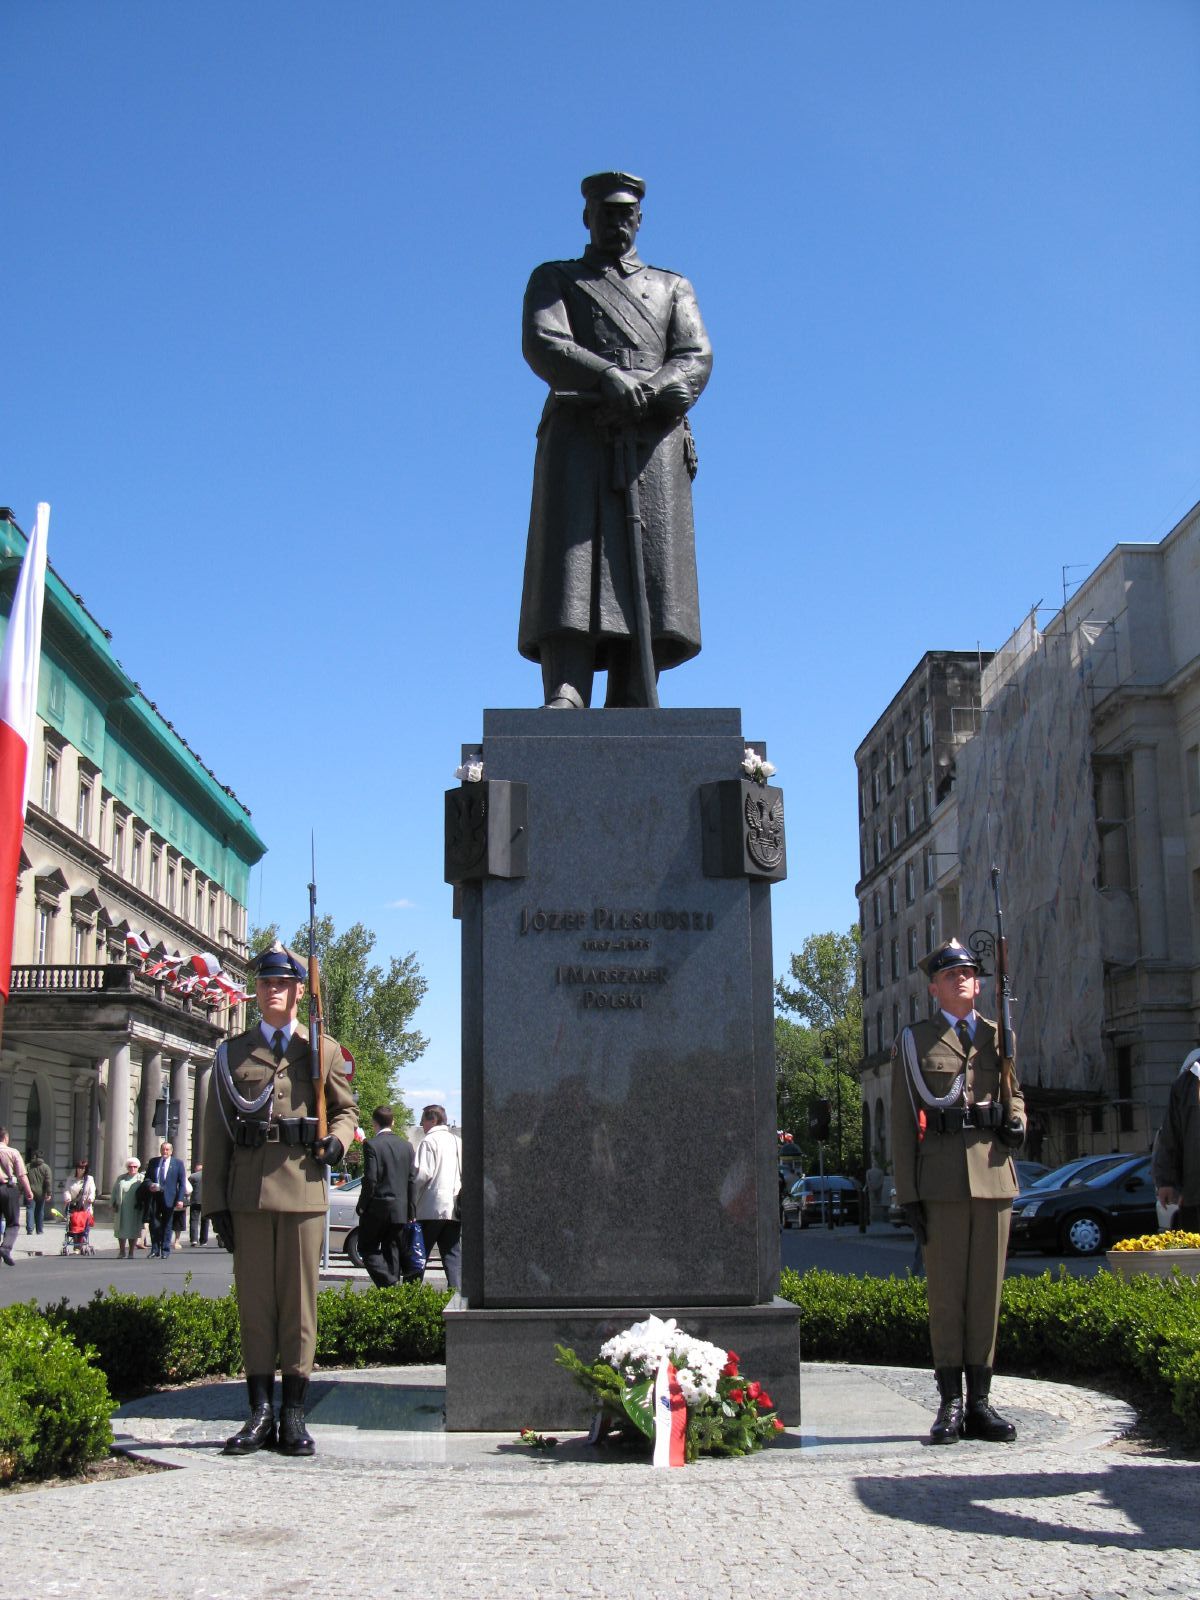 2. Realistinis, atpažįstamas J. Pilsudskio paminklas Varšuvoje priešais jo vardu pavadintą aikštę, viename aikštės centrinės ašies ašigalyje (pastatytas 1995 m.) | Wikipedia.org nuotr.